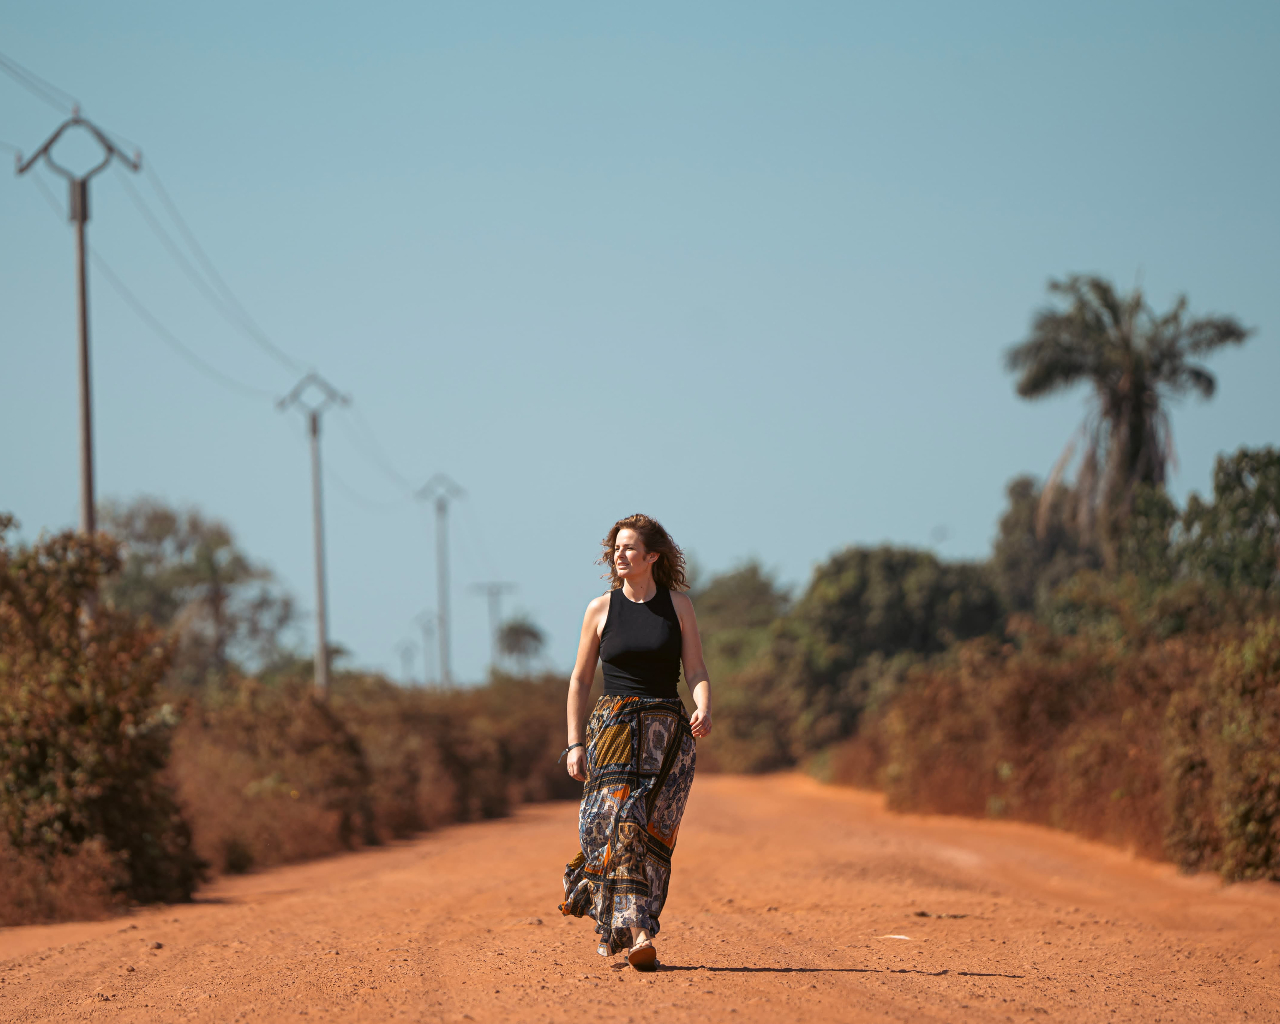 Elisabeth op een typisch rode weg in het binnenland van Gambia